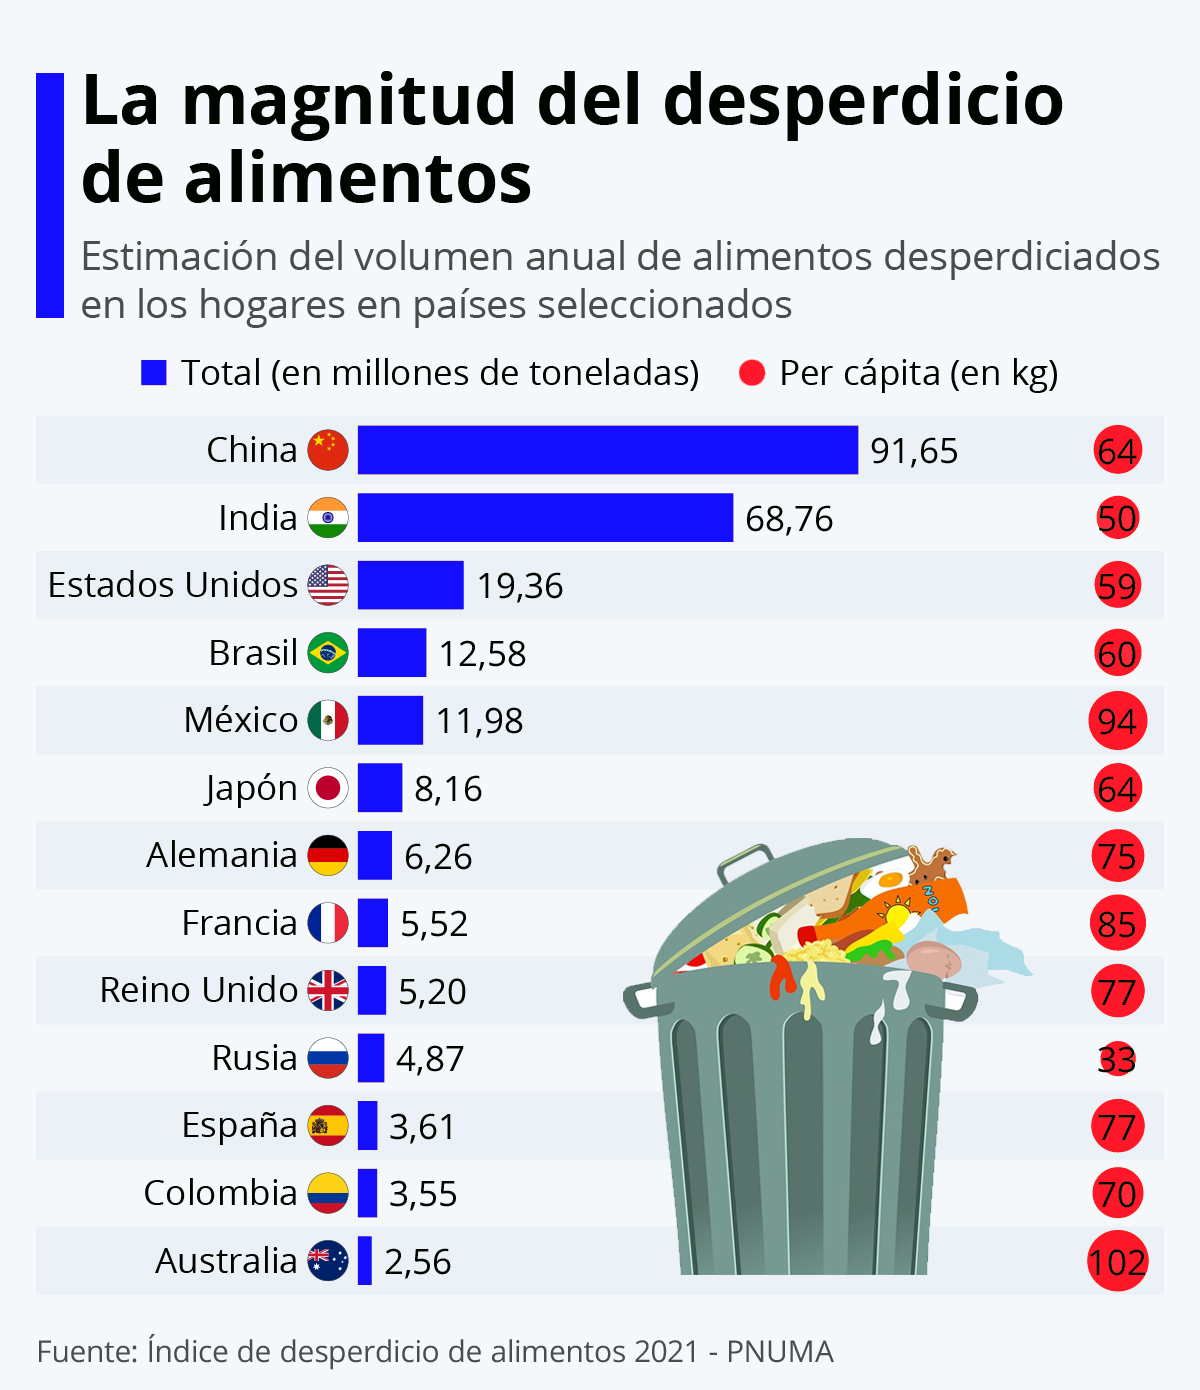 La imagen muestra los países con mayor cantidad de desperdicios